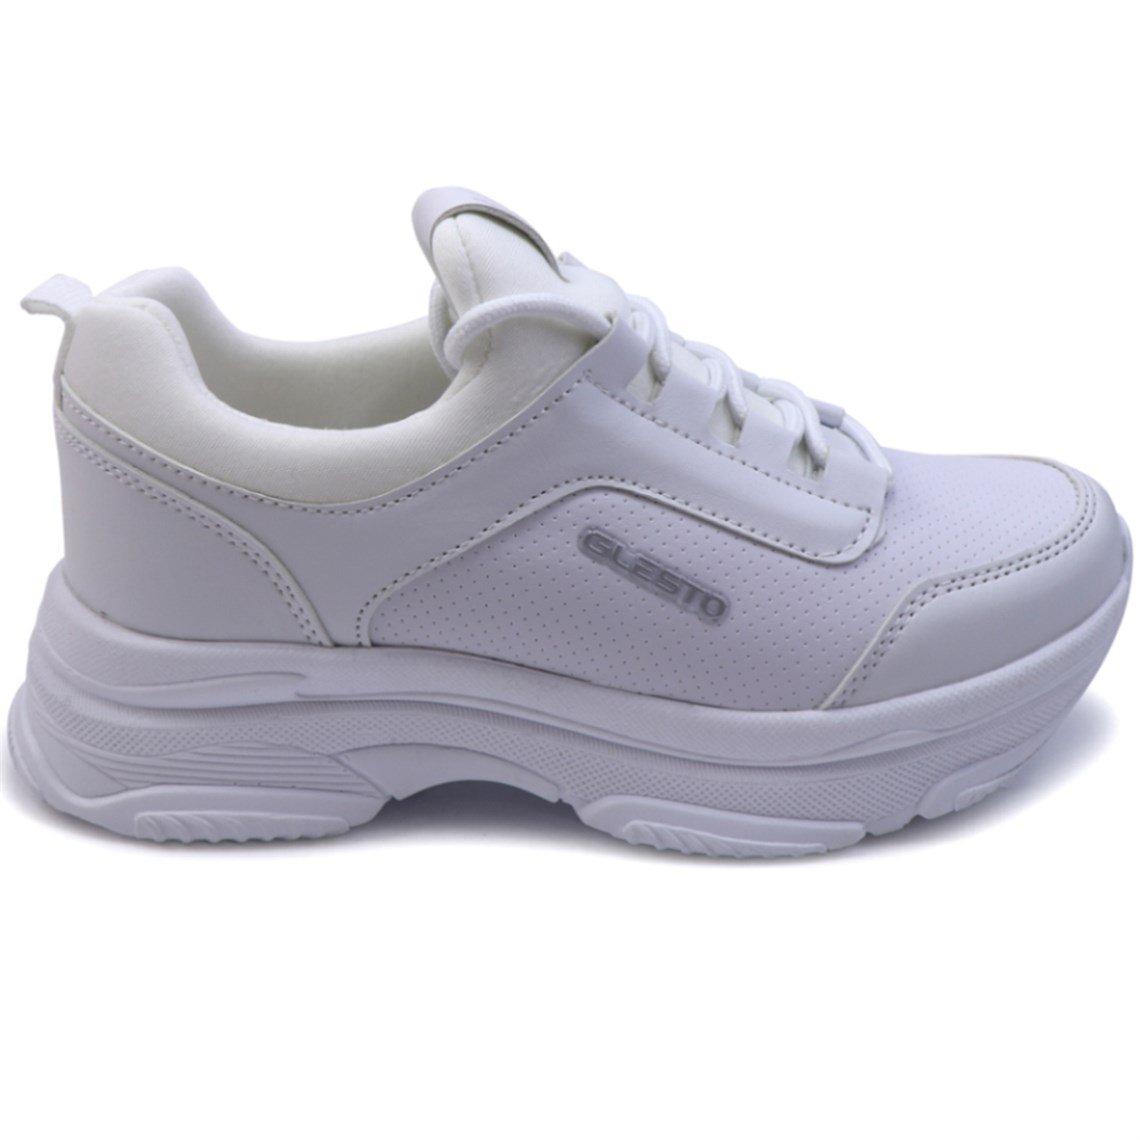 Glesto Rahat Nefes Alır Sneakers Beyaz Kadın Spor Ayakkabı 2265 | Ayakkabı  City